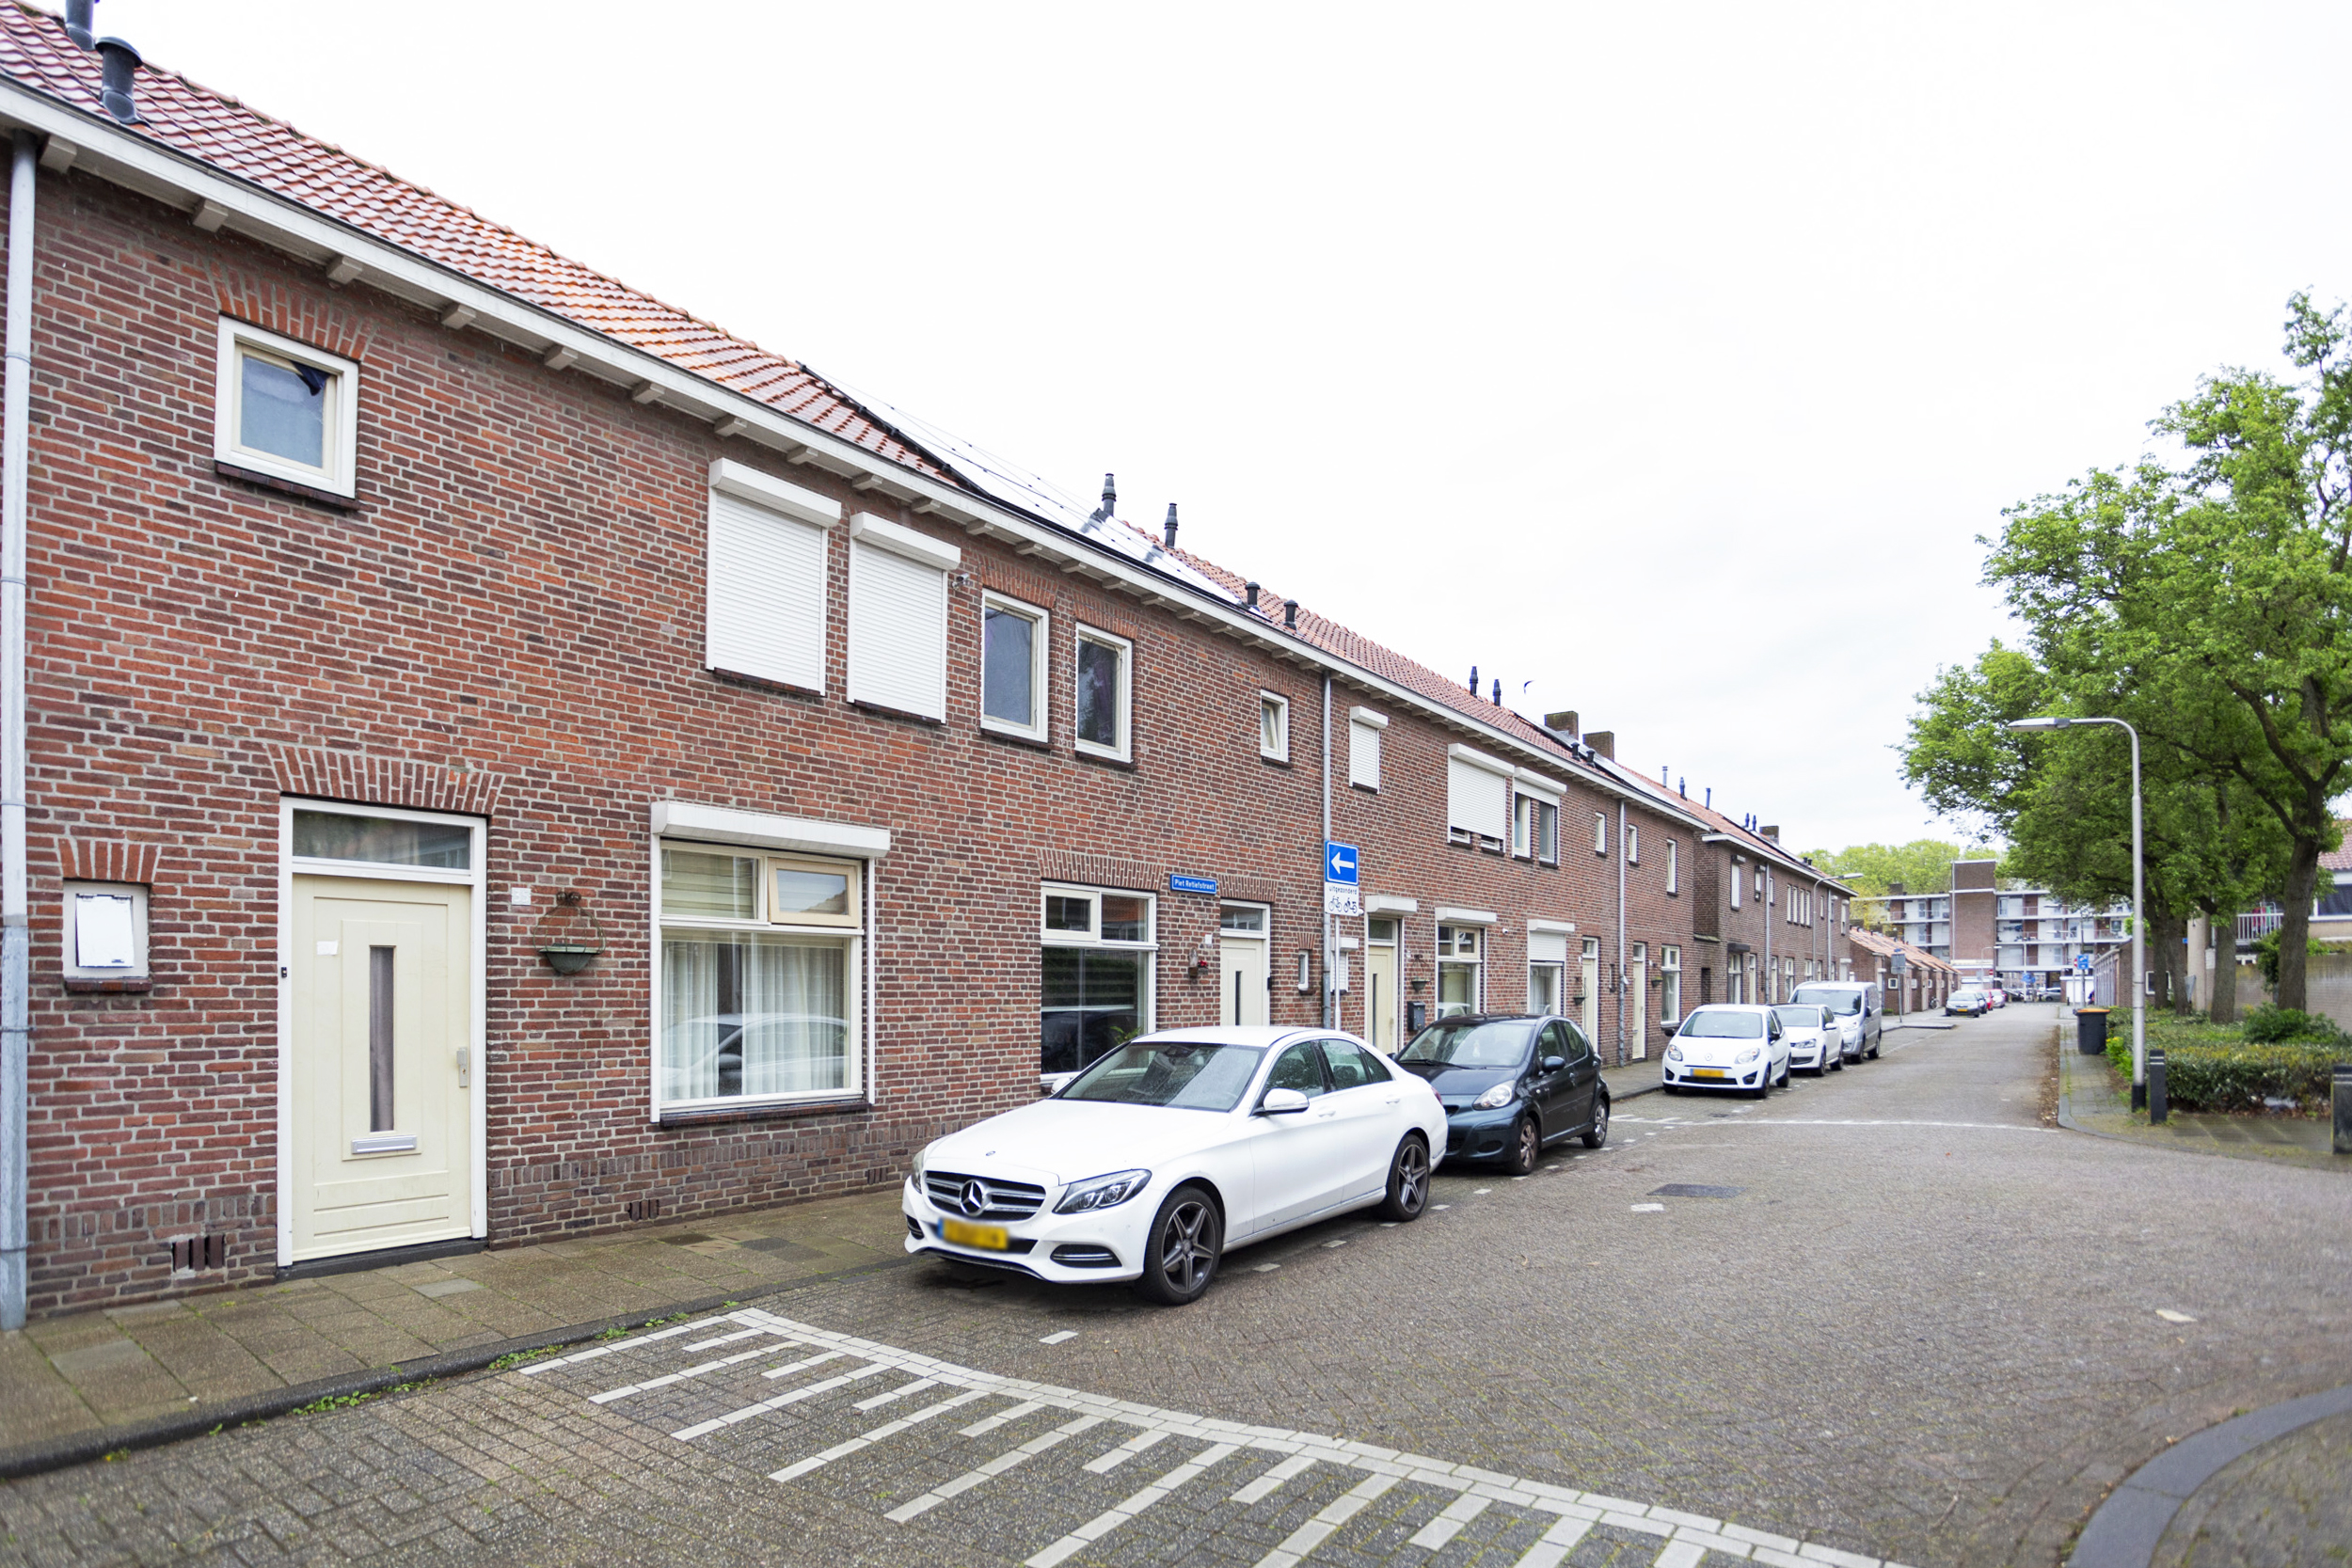 Piet Retiefstraat 35, 5025 CA Tilburg, Nederland